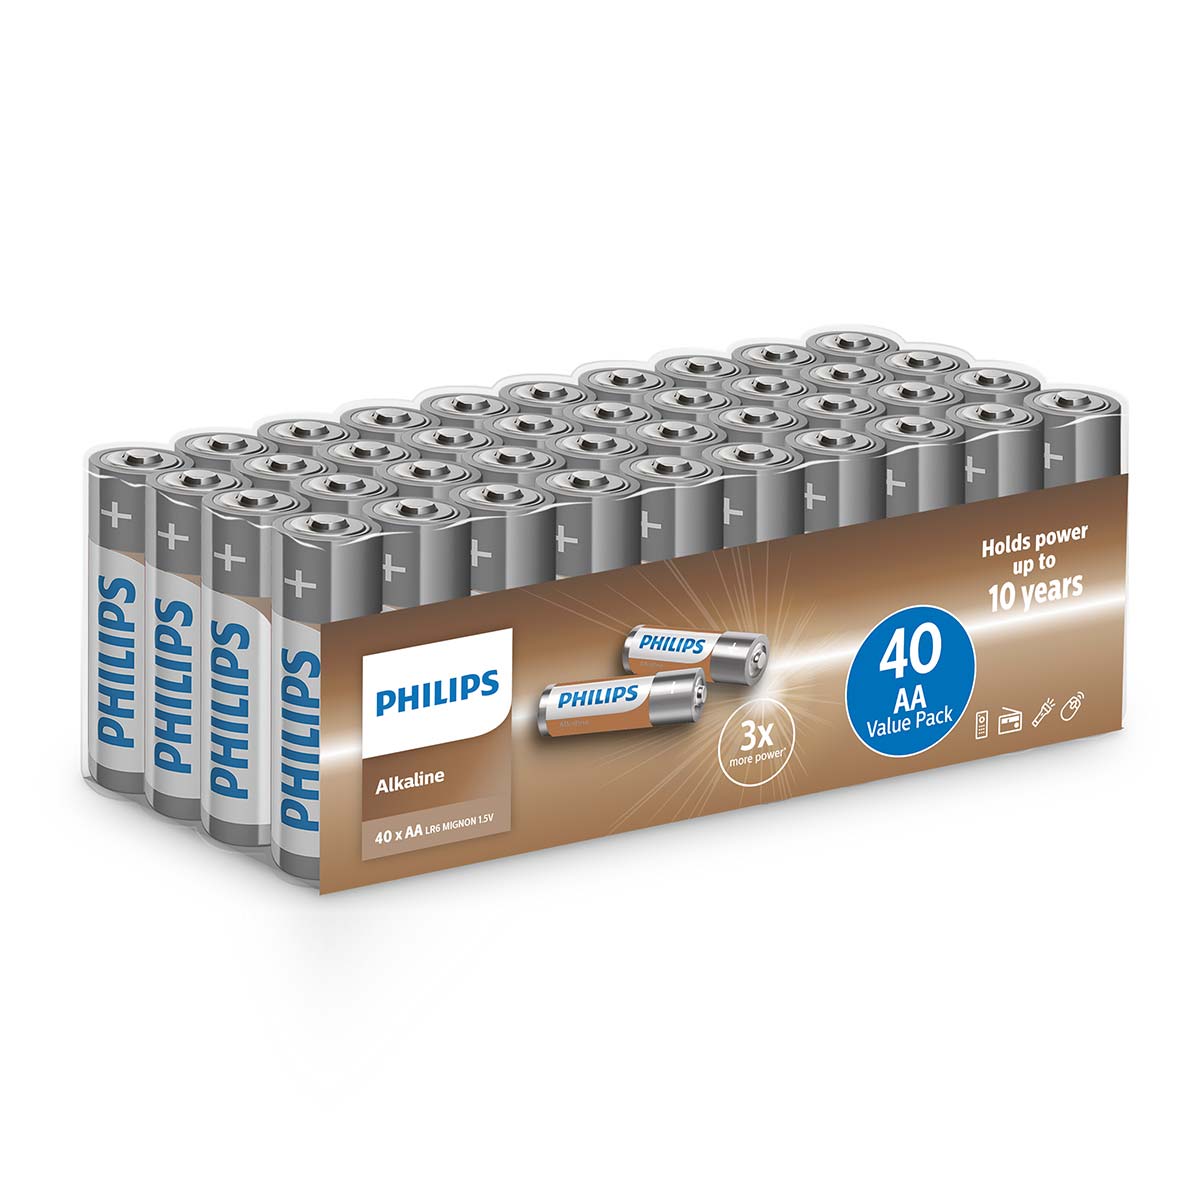 Philips Alkaline AA batterí, 40 stykki í pakka.